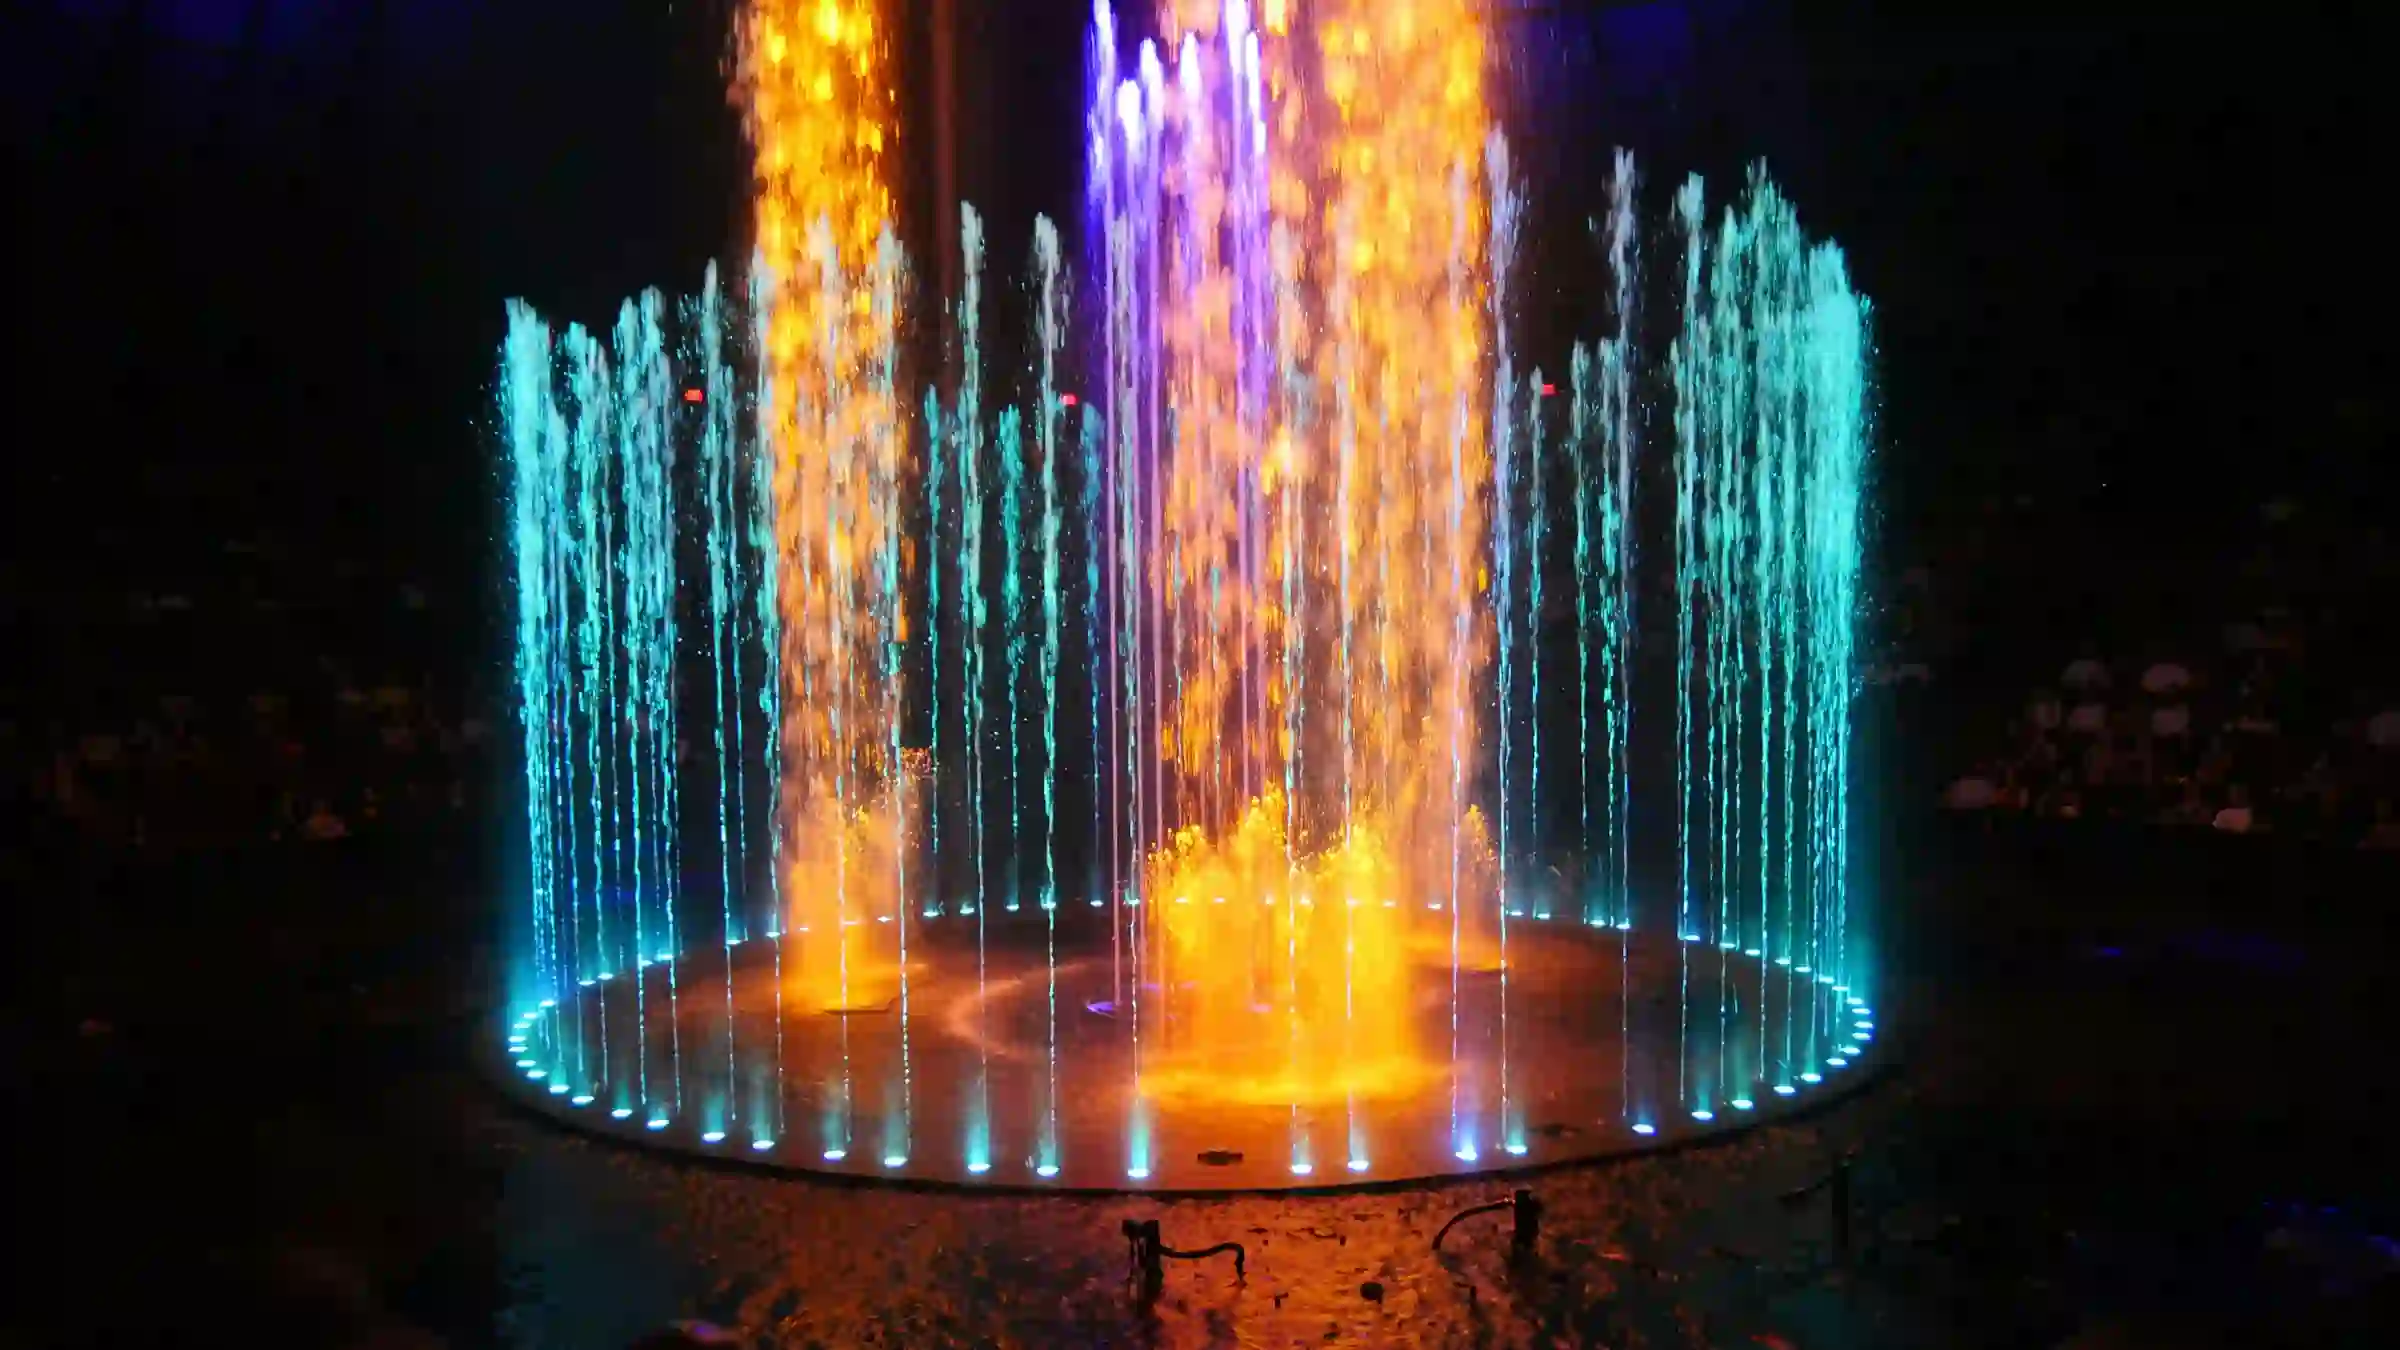 Įvairių spalvų šviečiantis fontanas nakties tamsoje.